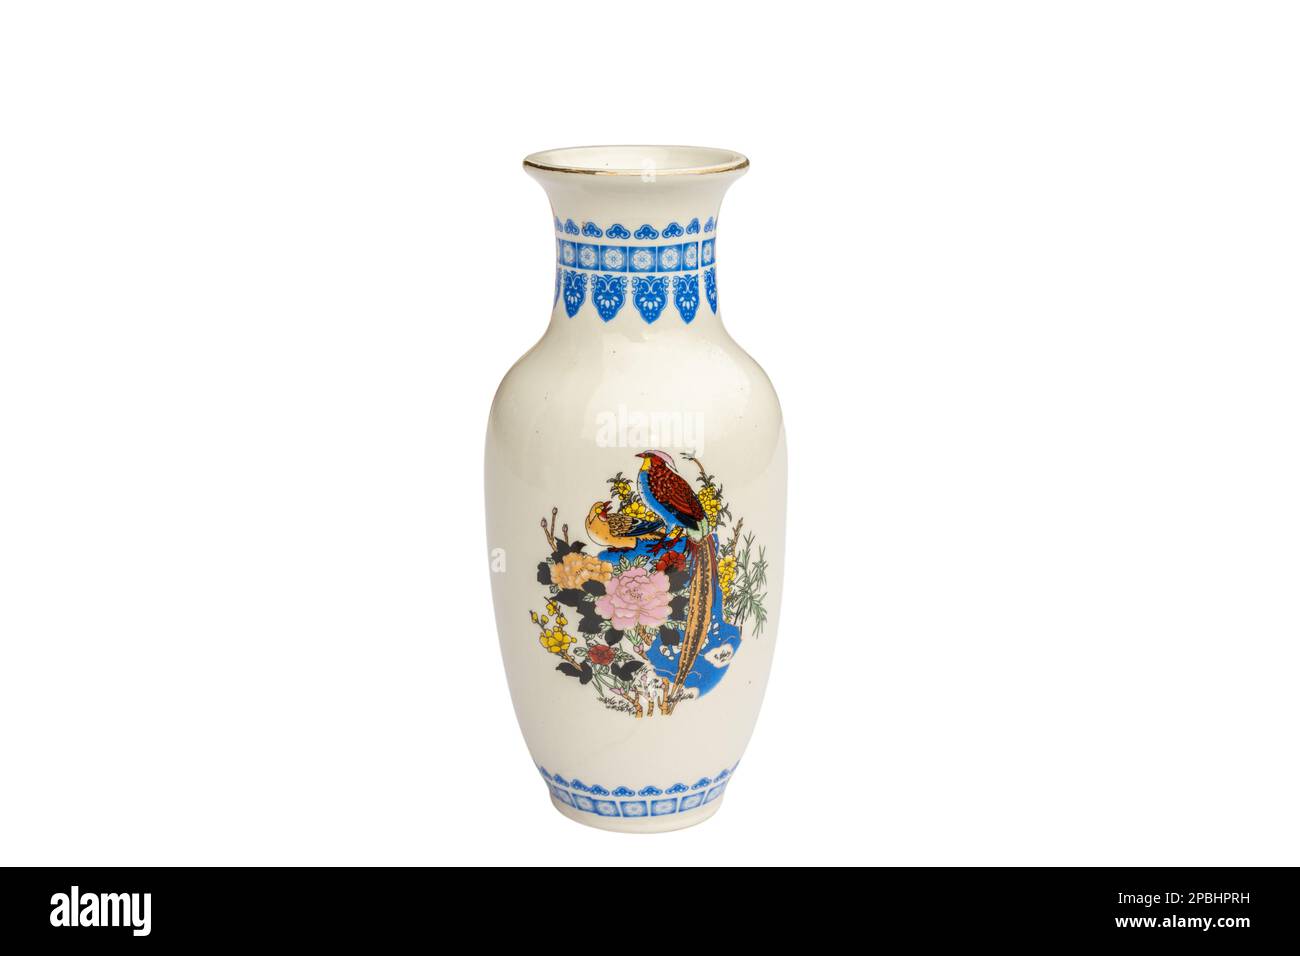 Decorative ceramic vase home decor isolated on white background Stock Photo